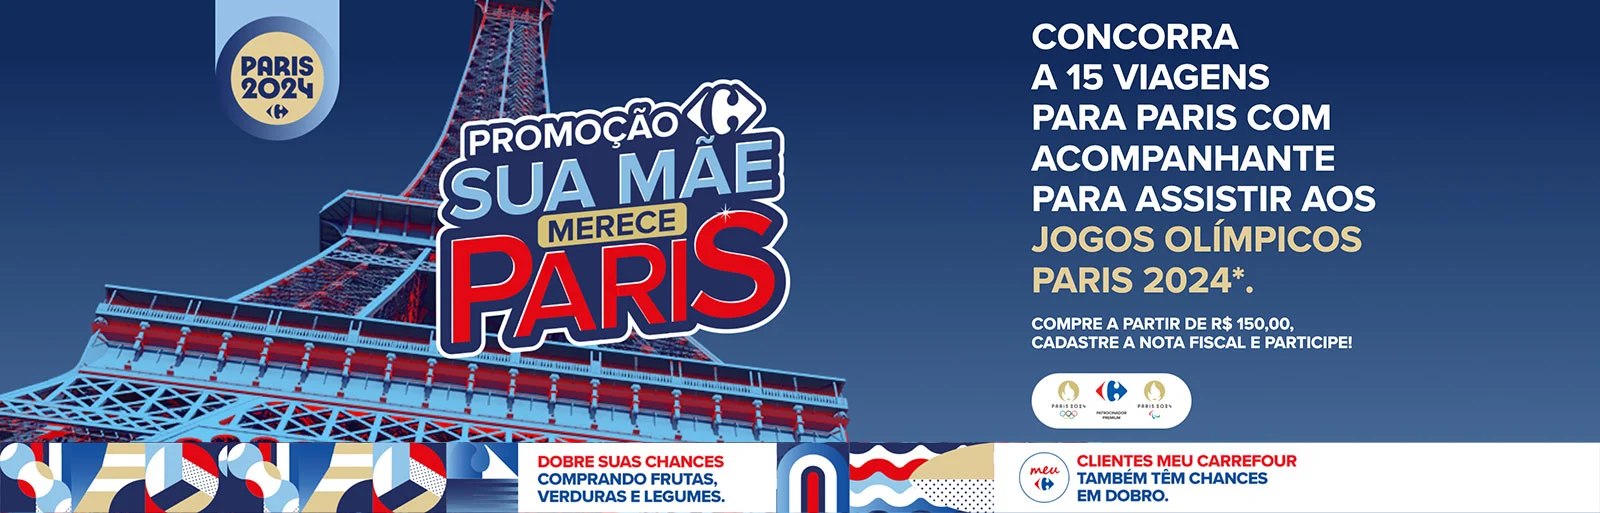 Promoção Carrefour 2024 Sua Mãe Merece Paris